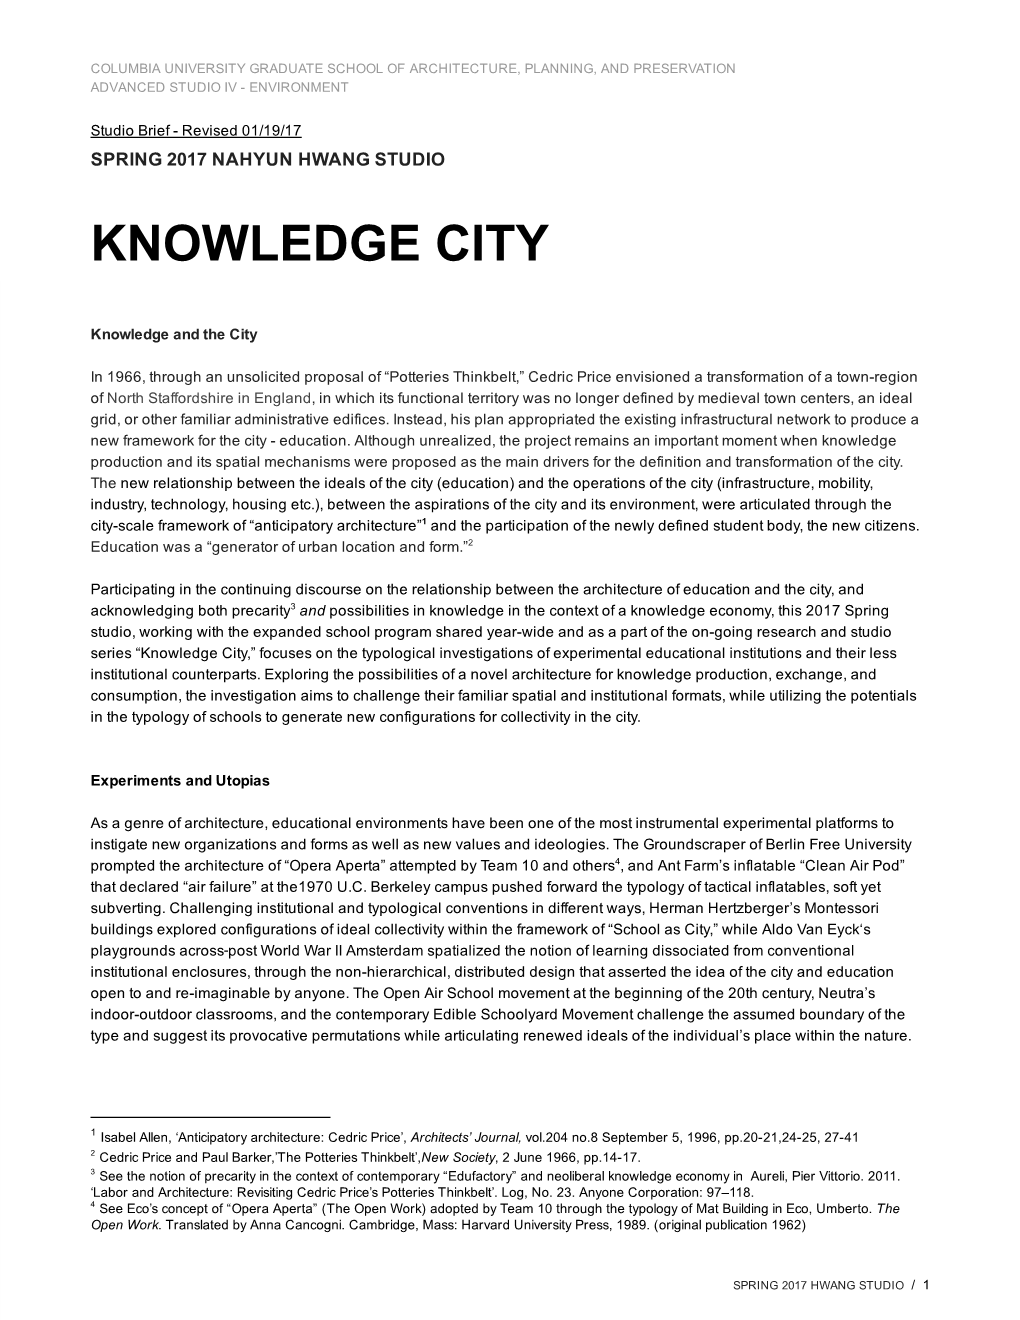 Knowledge City